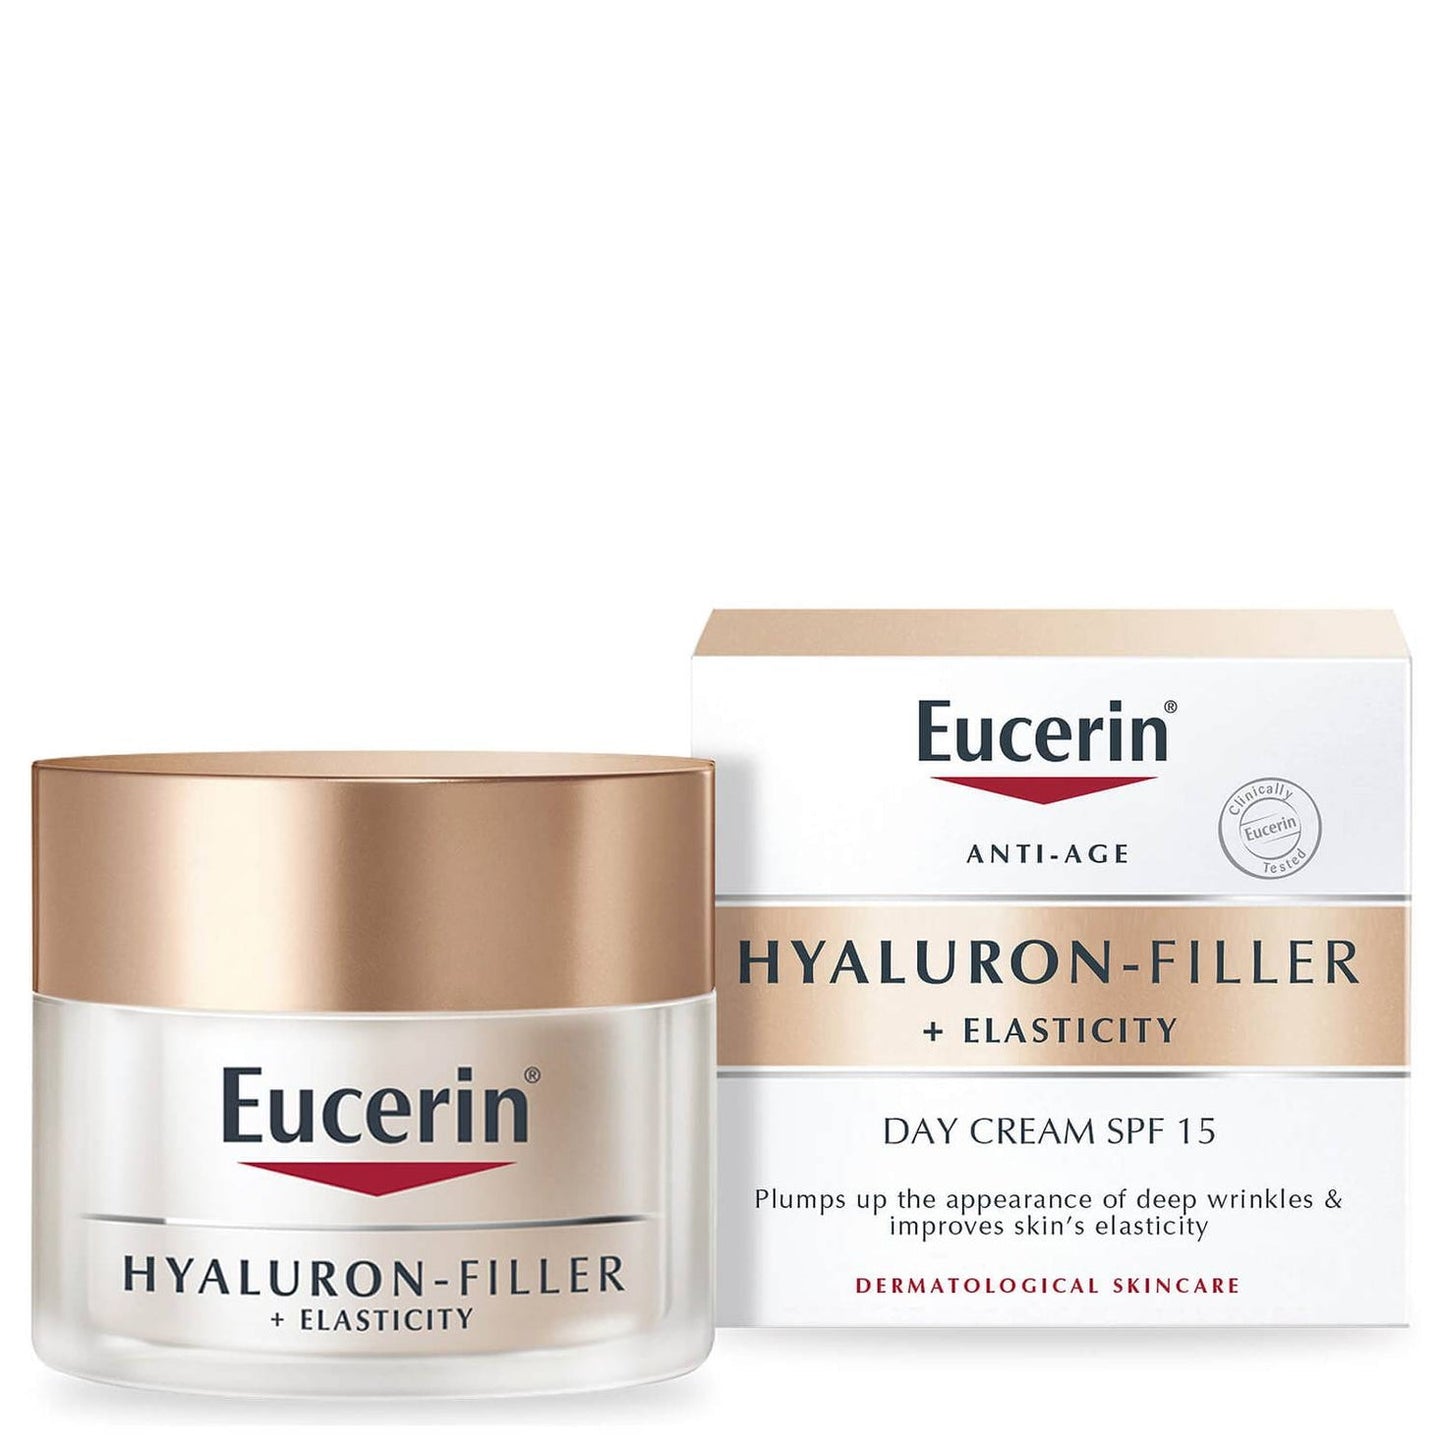 Eucerin Hyaluron-Filler + Elasticity soin de jour SPF 15 50ml